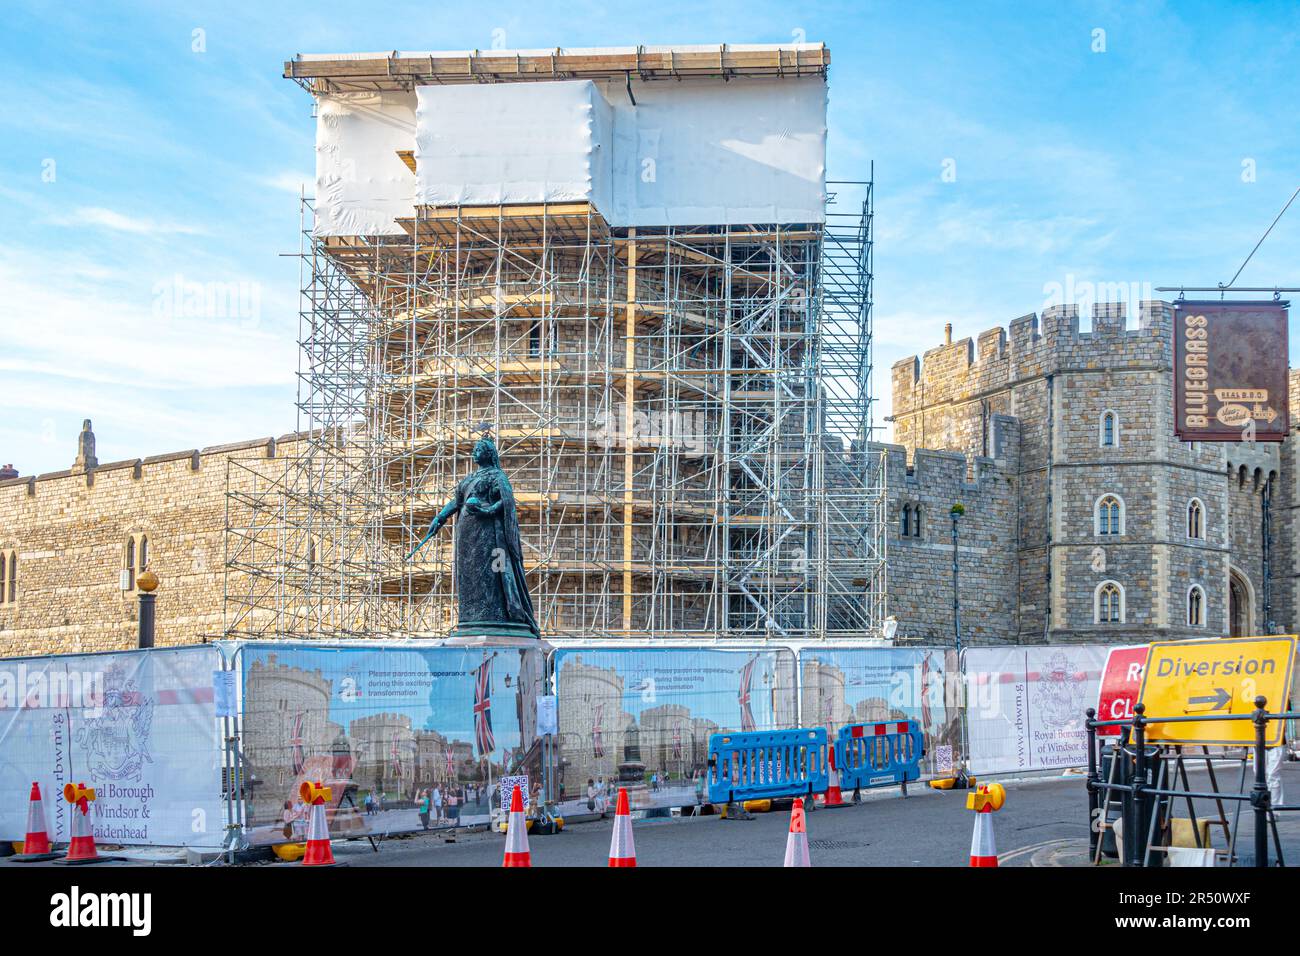 Ponteggi eretti dietro un angolo del Castello di Windsor nel Berkshire, Regno Unito per consentire l'esecuzione di lavori di riparazione e manutenzione. Foto Stock